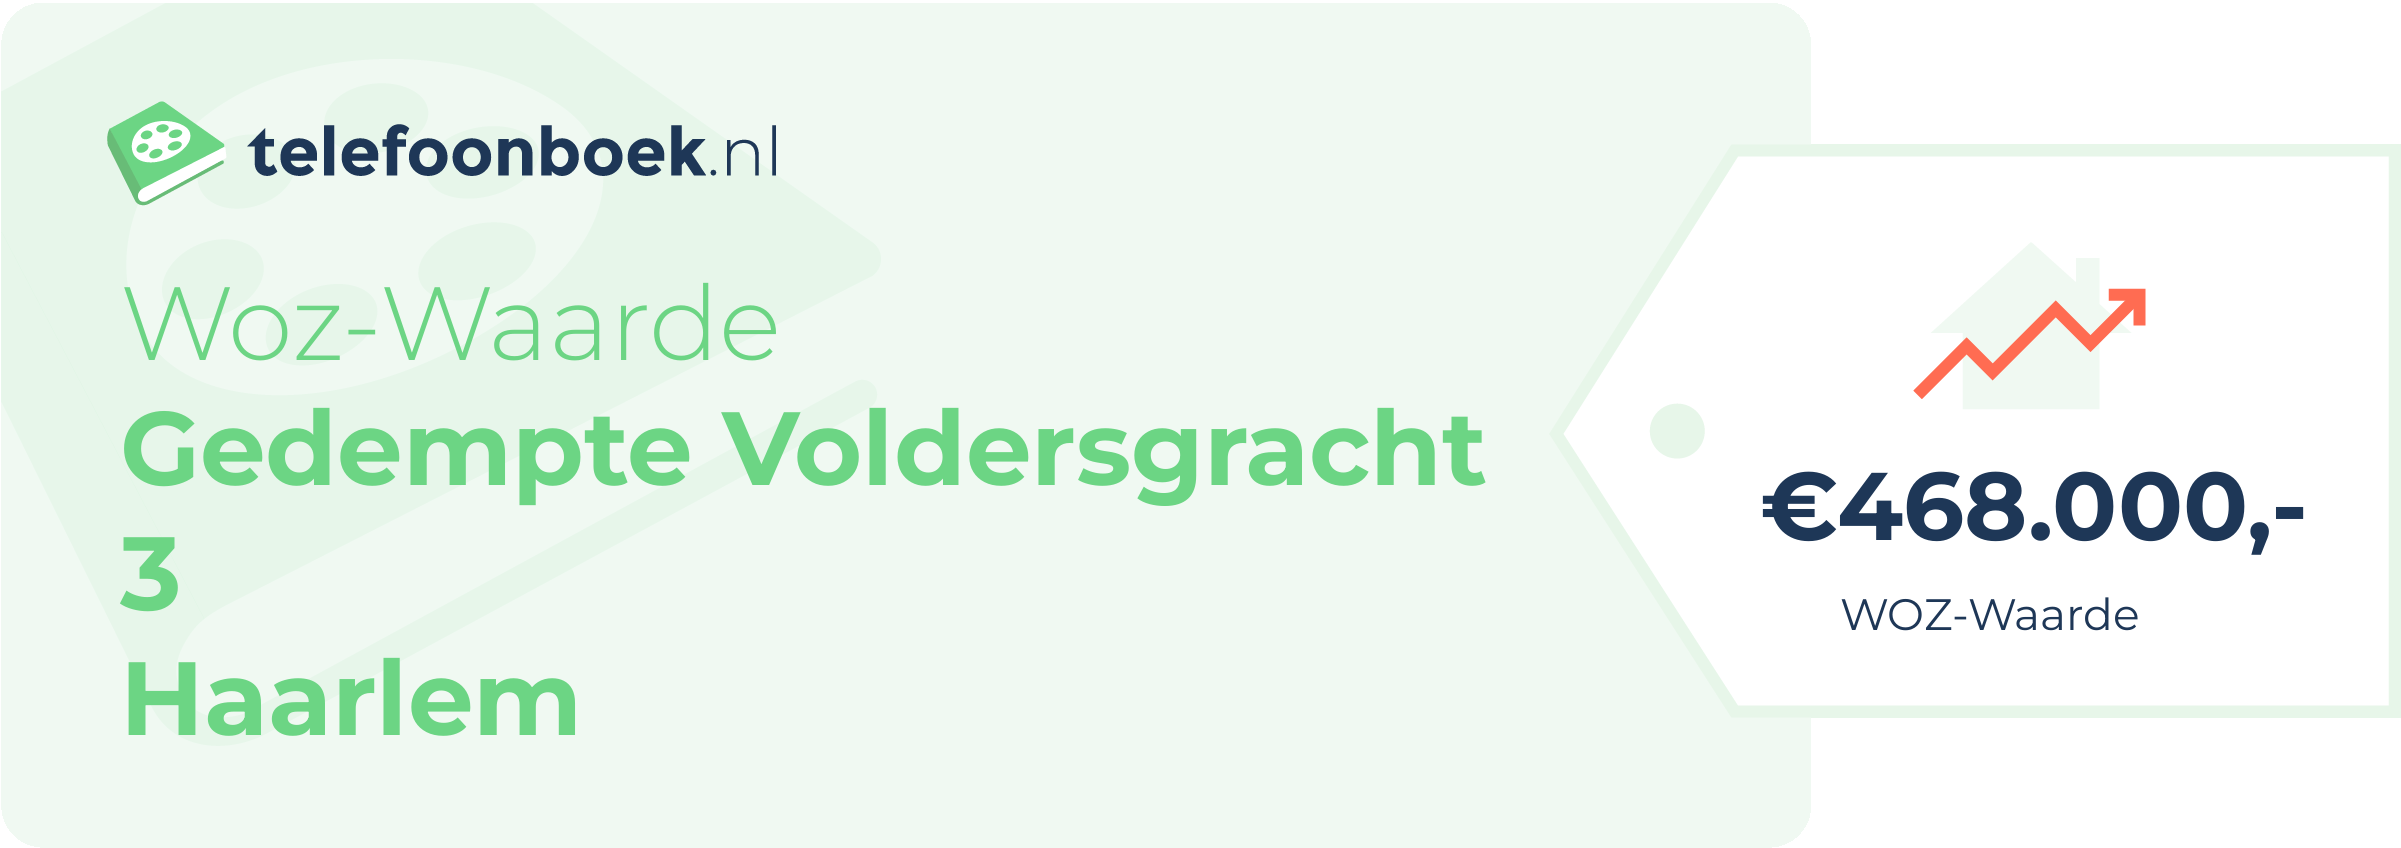 WOZ-waarde Gedempte Voldersgracht 3 Haarlem